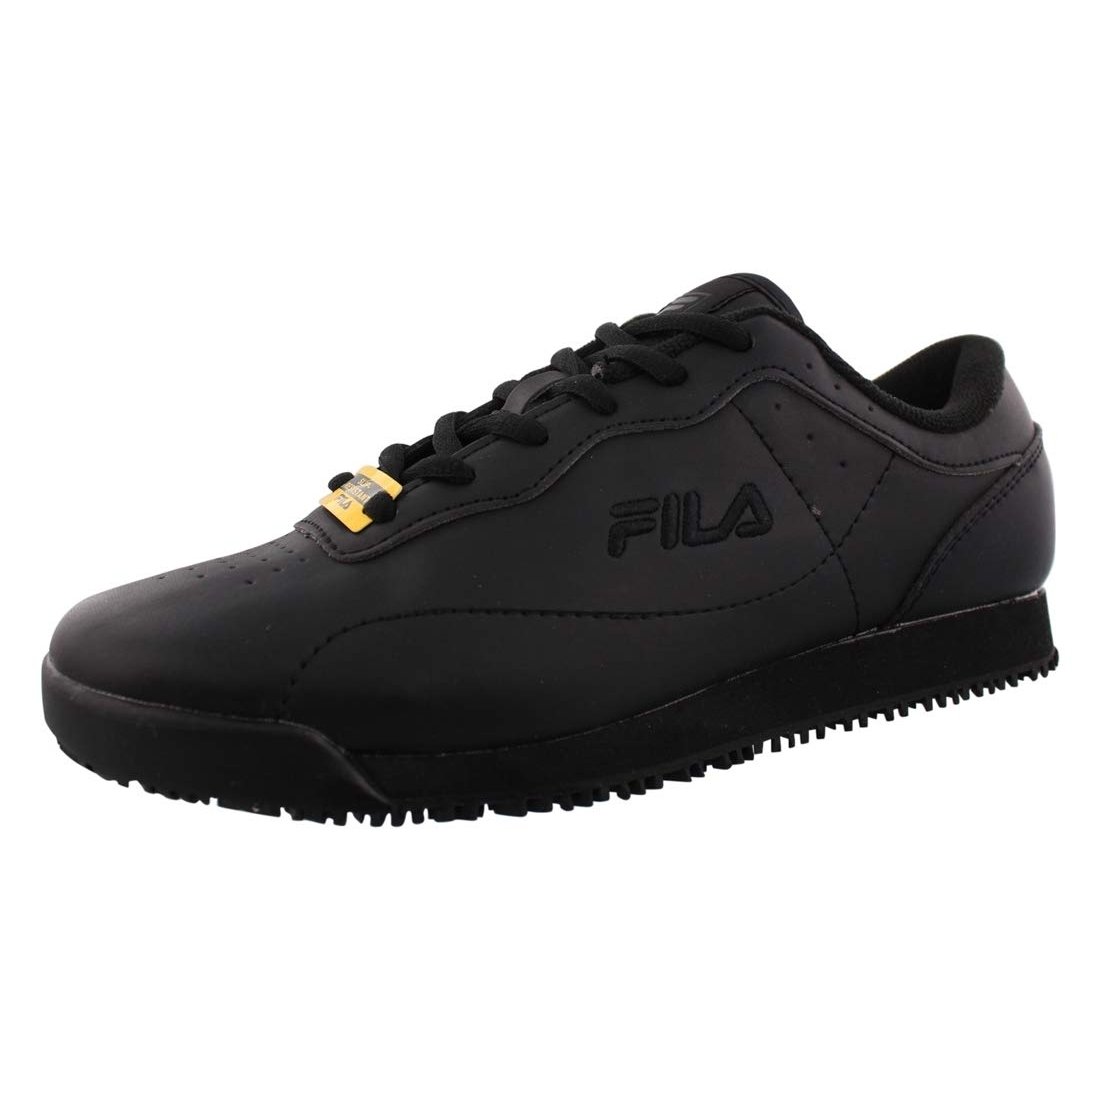 Fila Memory Viable Sr Wide Womens Shoes Size 10, Color: Black 0 BLK/BLK/BLK - Black, 11.5